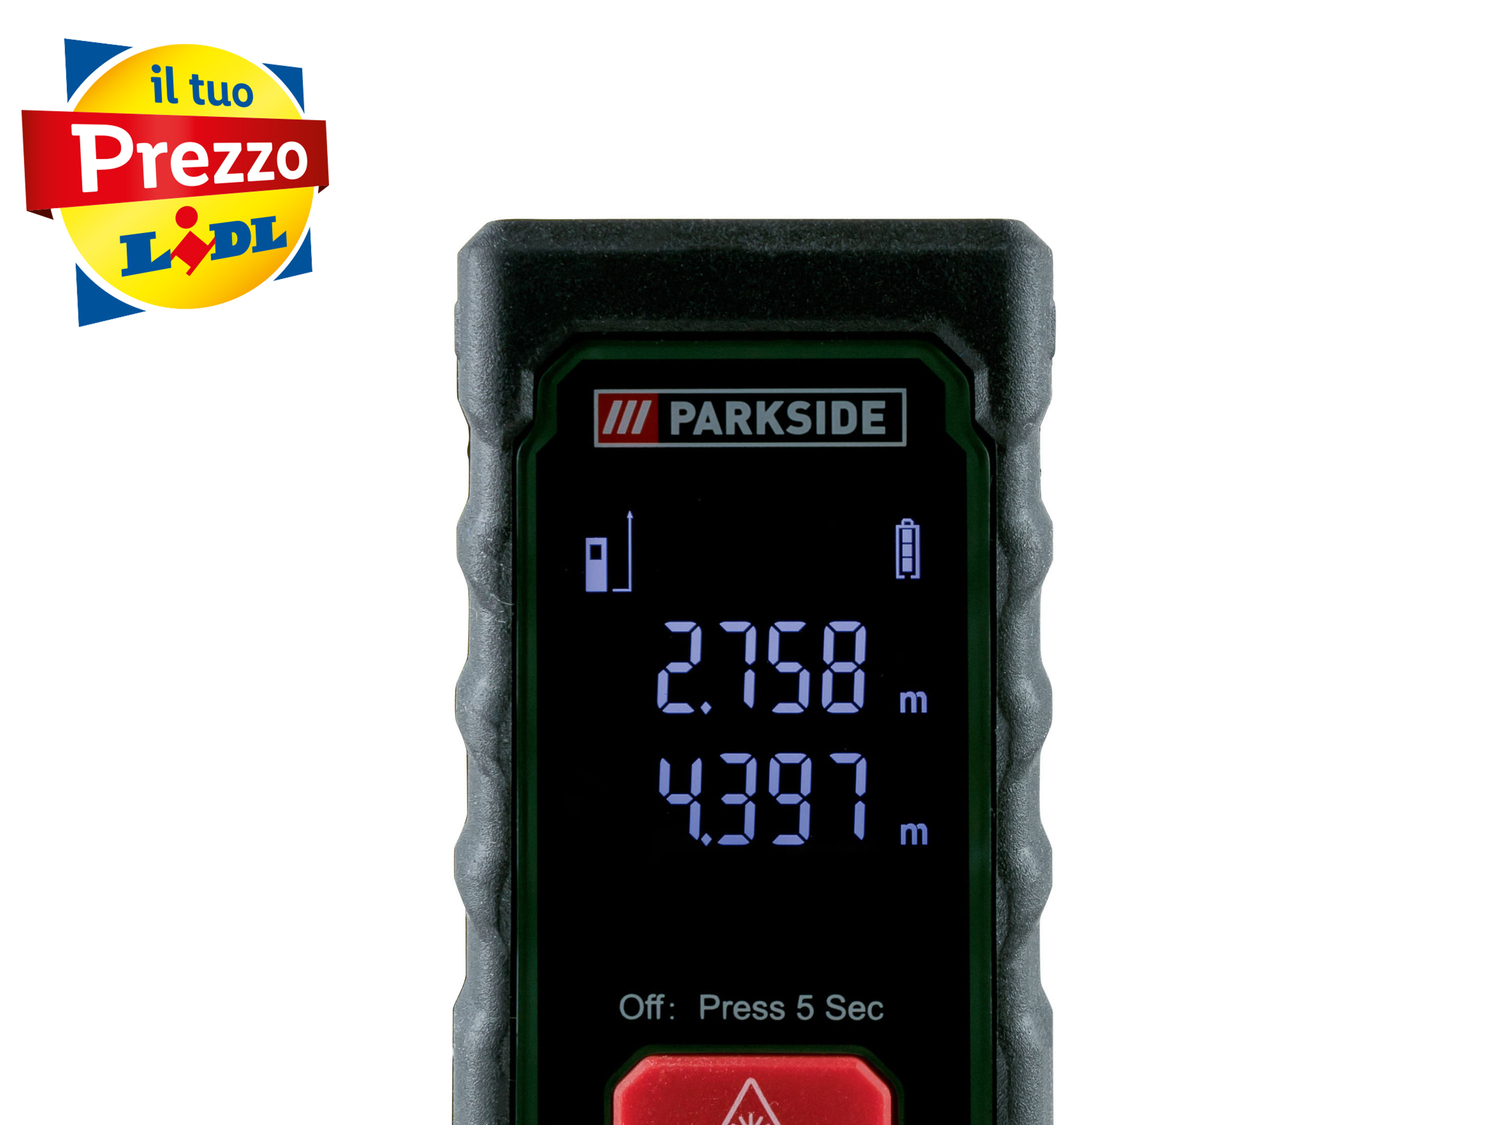 Misuratore di distanza laser Parkside, prezzo 19.99 € 
20 m 
- 2 modi di funzionamento: ...